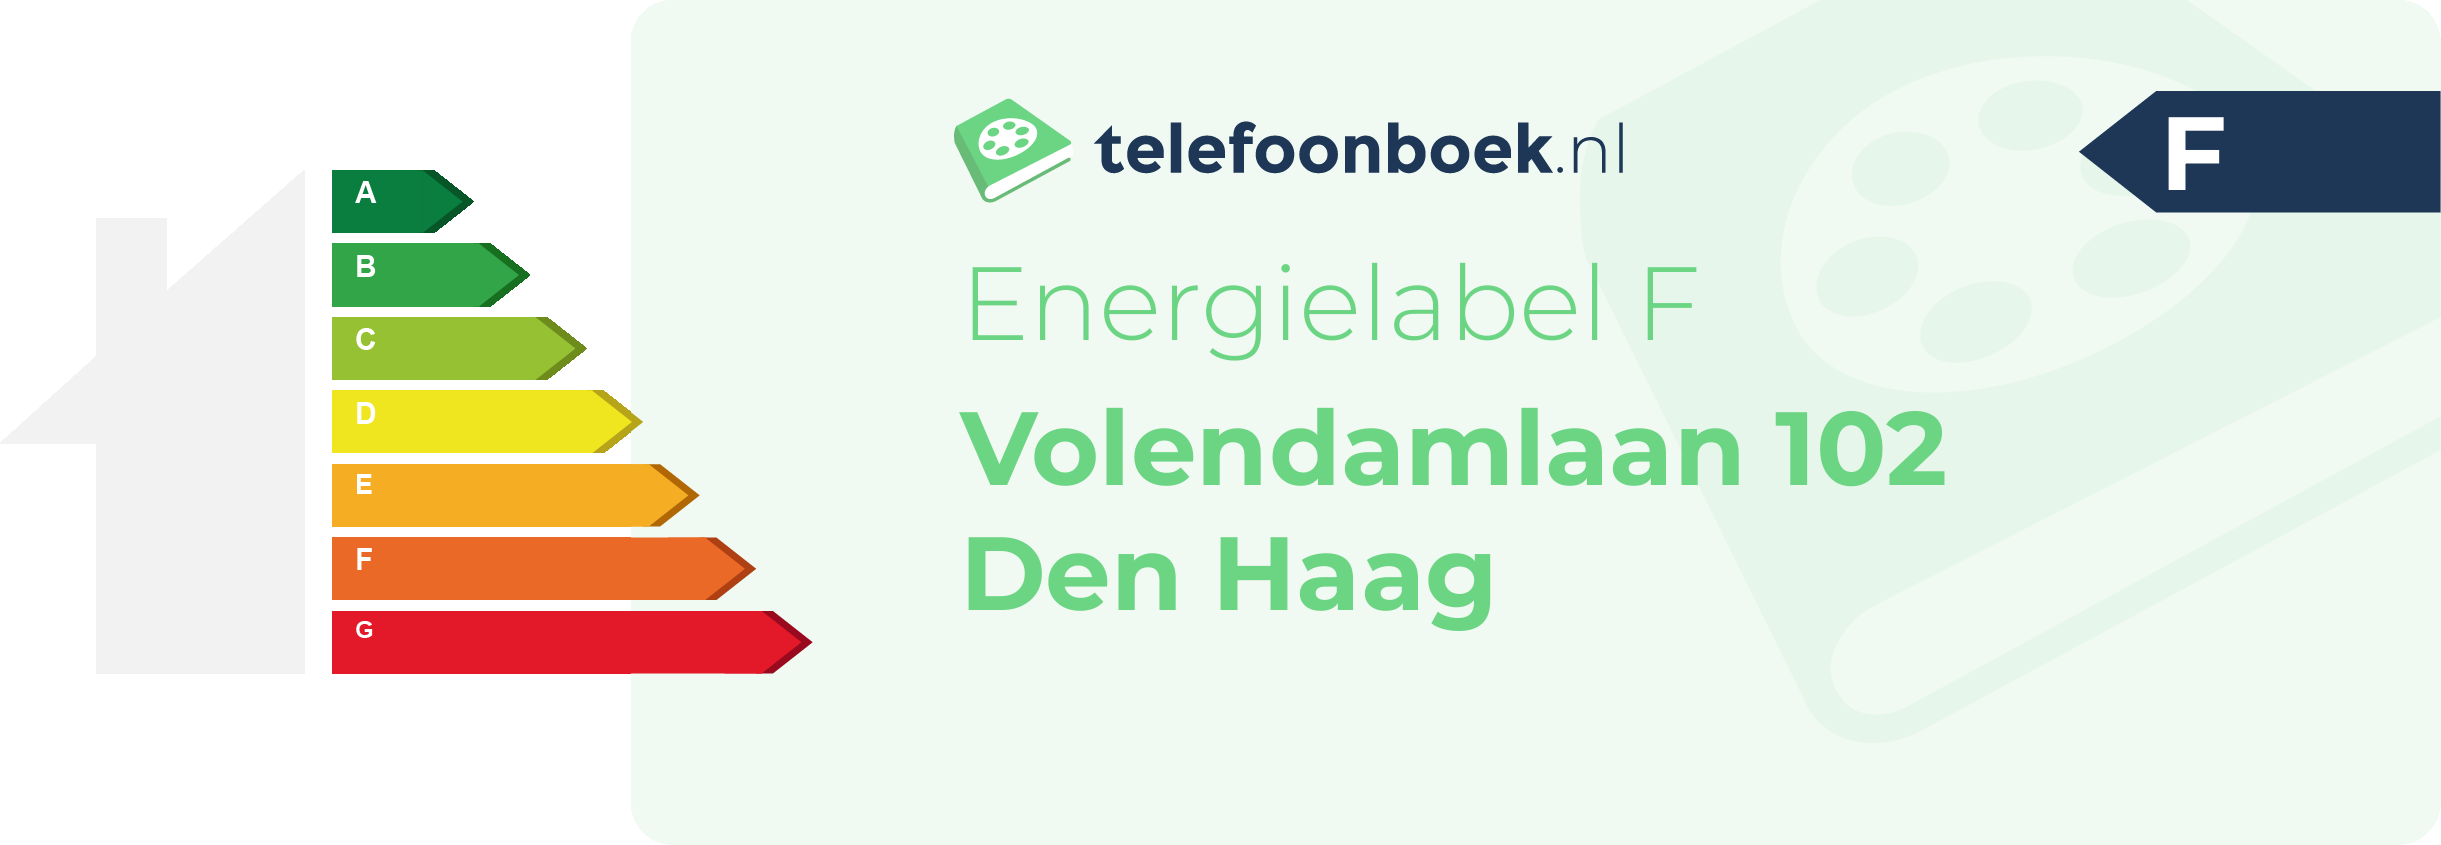 Energielabel Volendamlaan 102 Den Haag